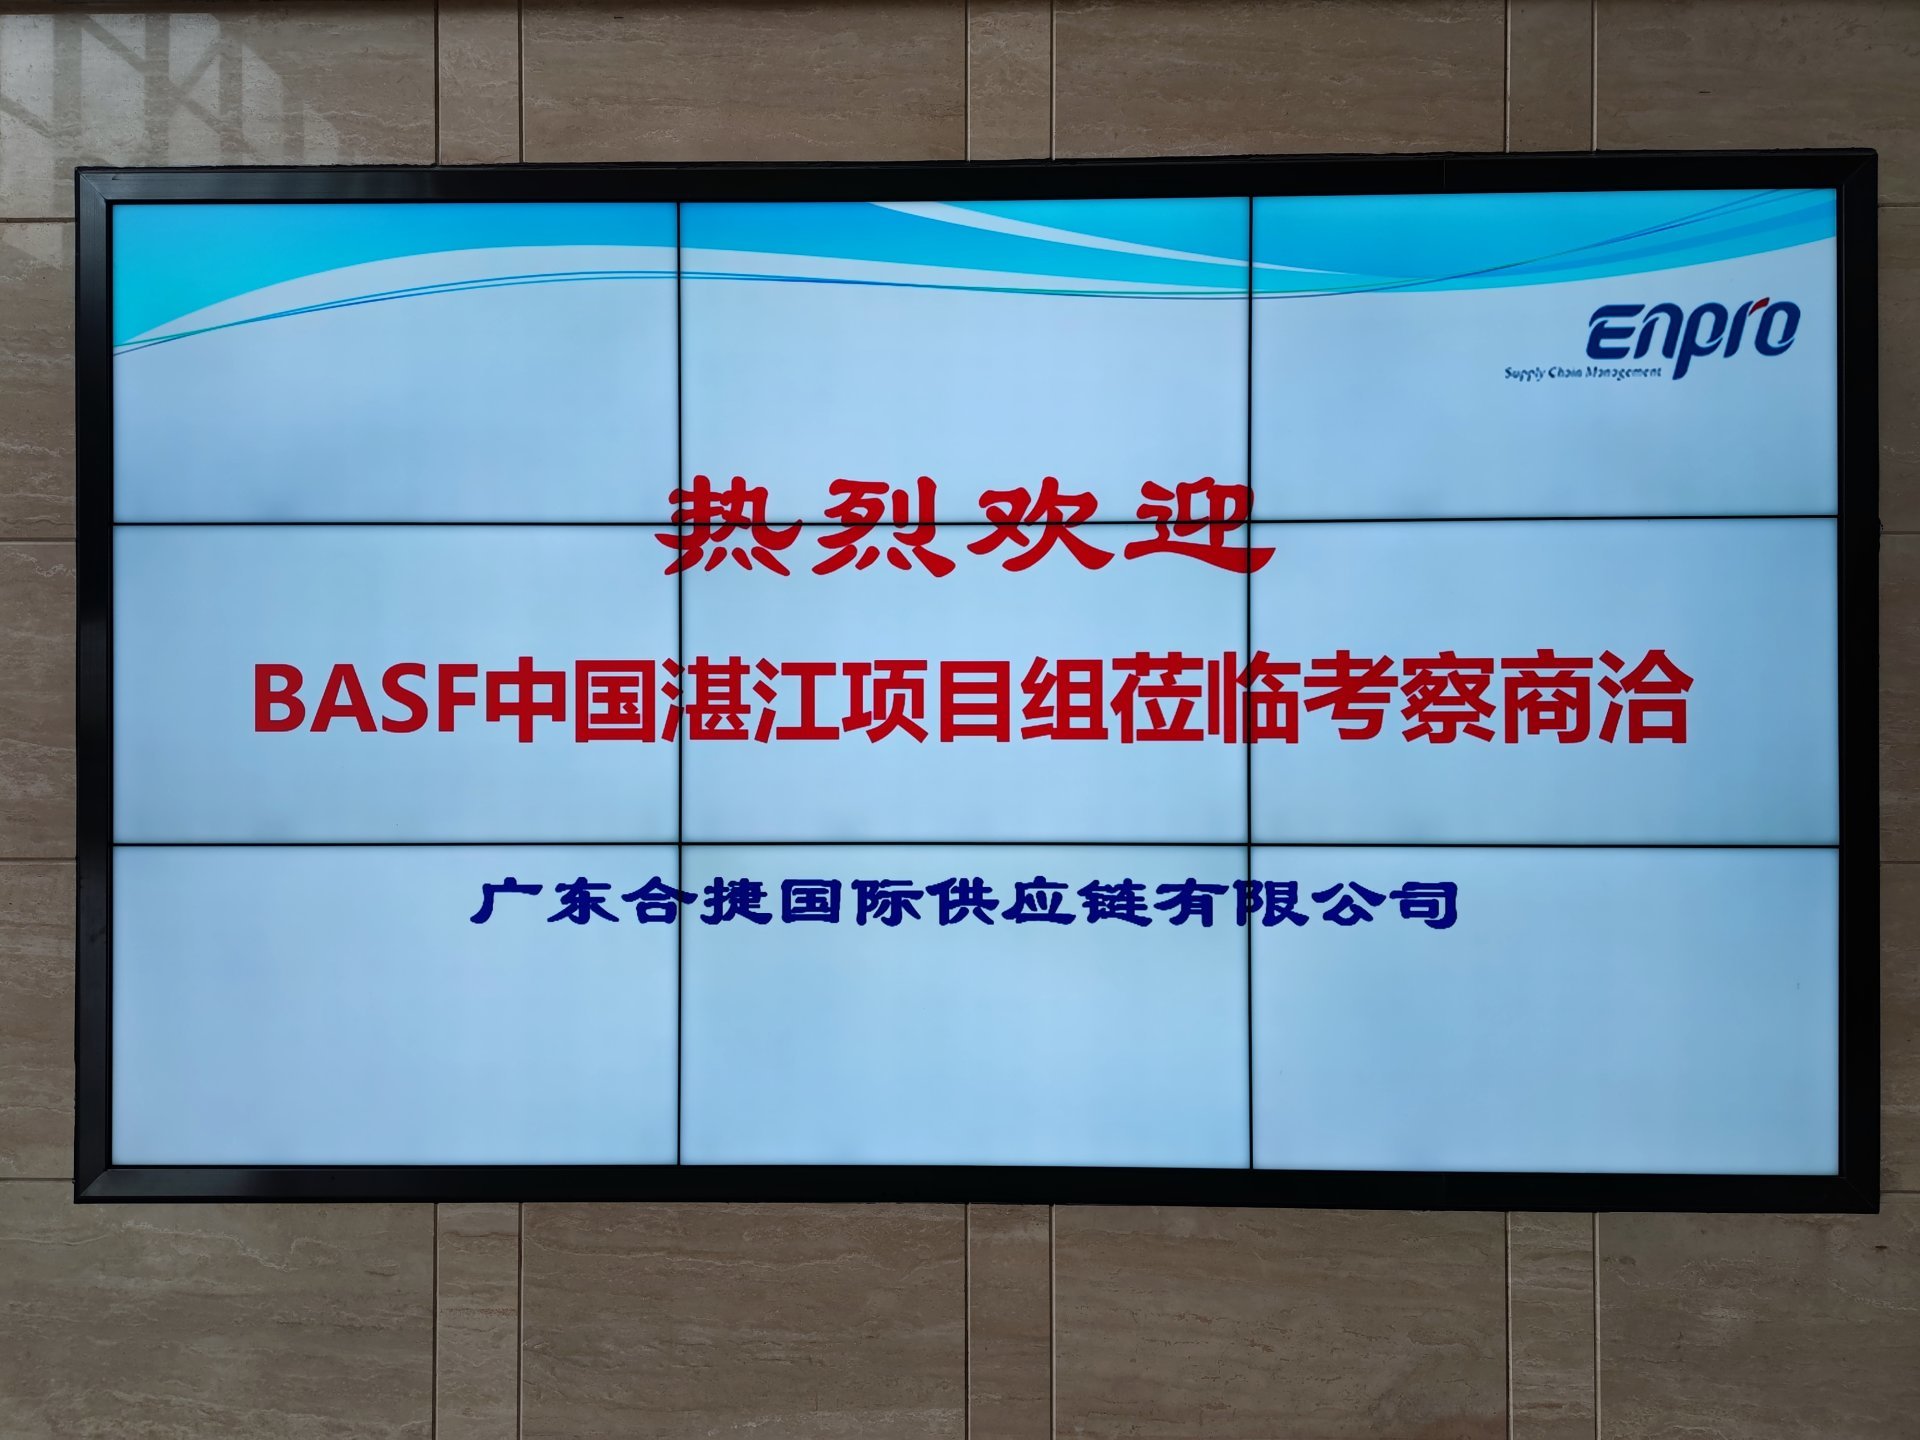 BASF ZhangJiang Project team visited Enpro